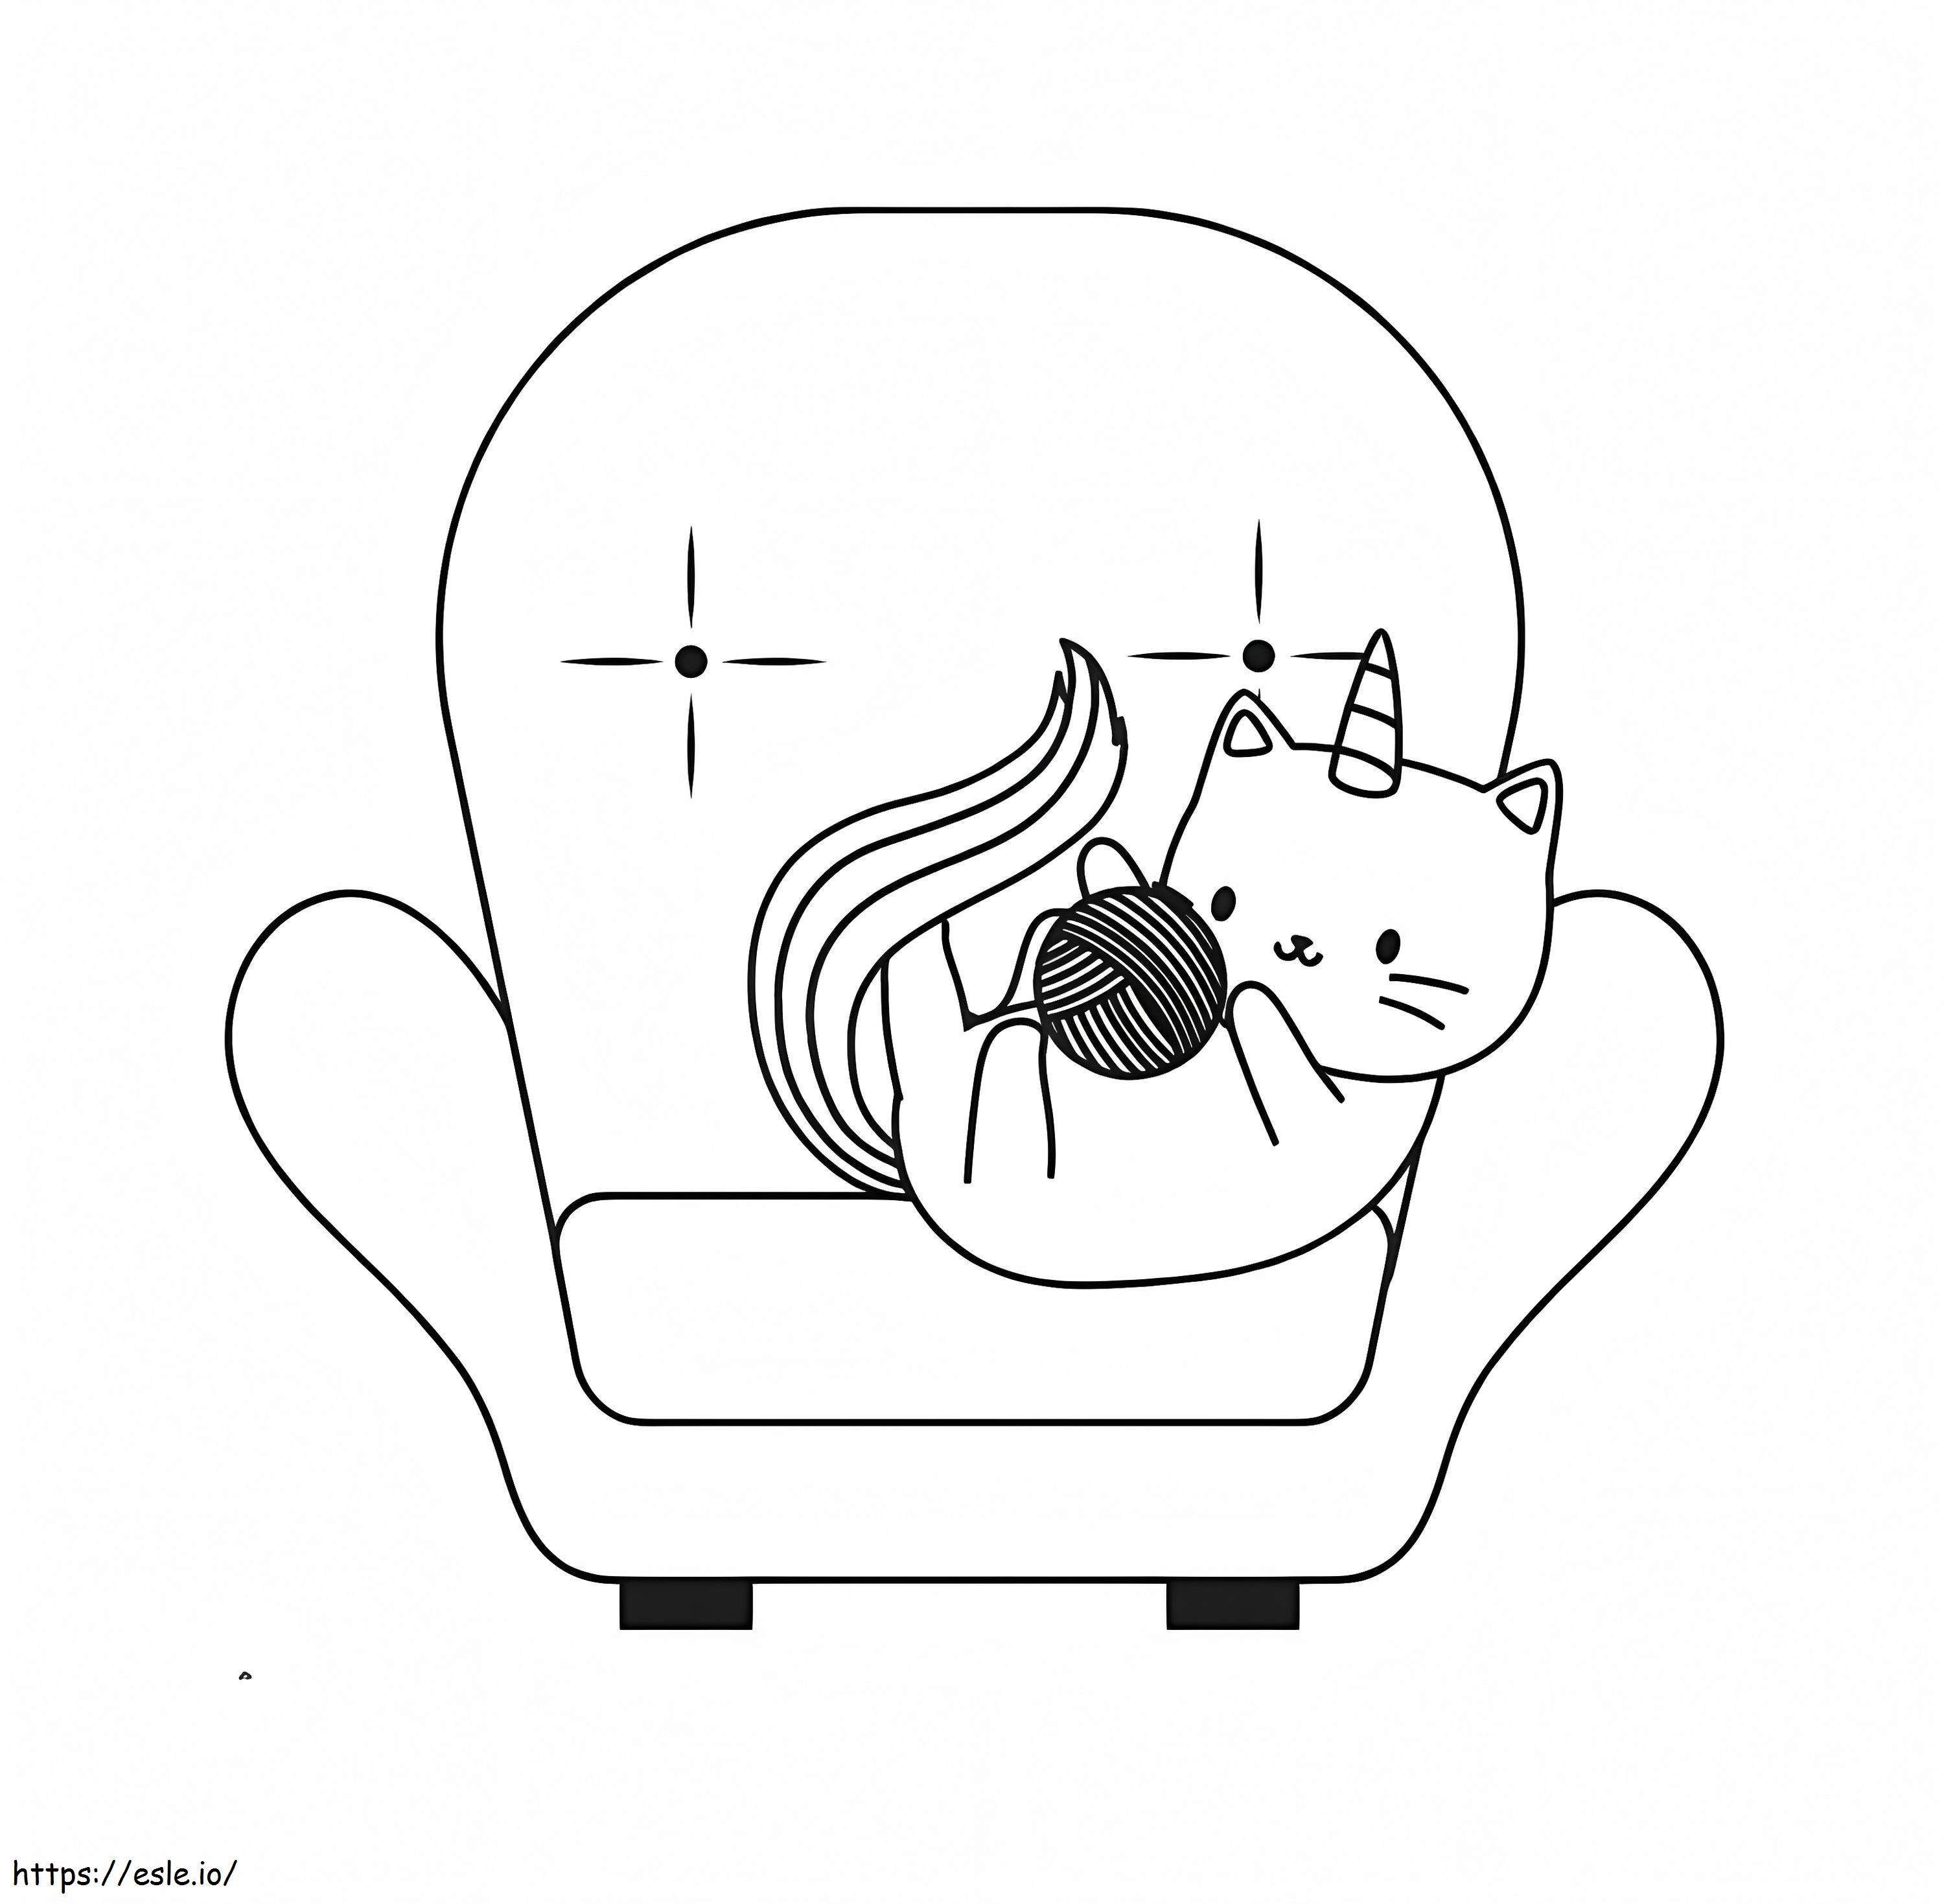 Einhornkatze auf einem Stuhl ausmalbilder